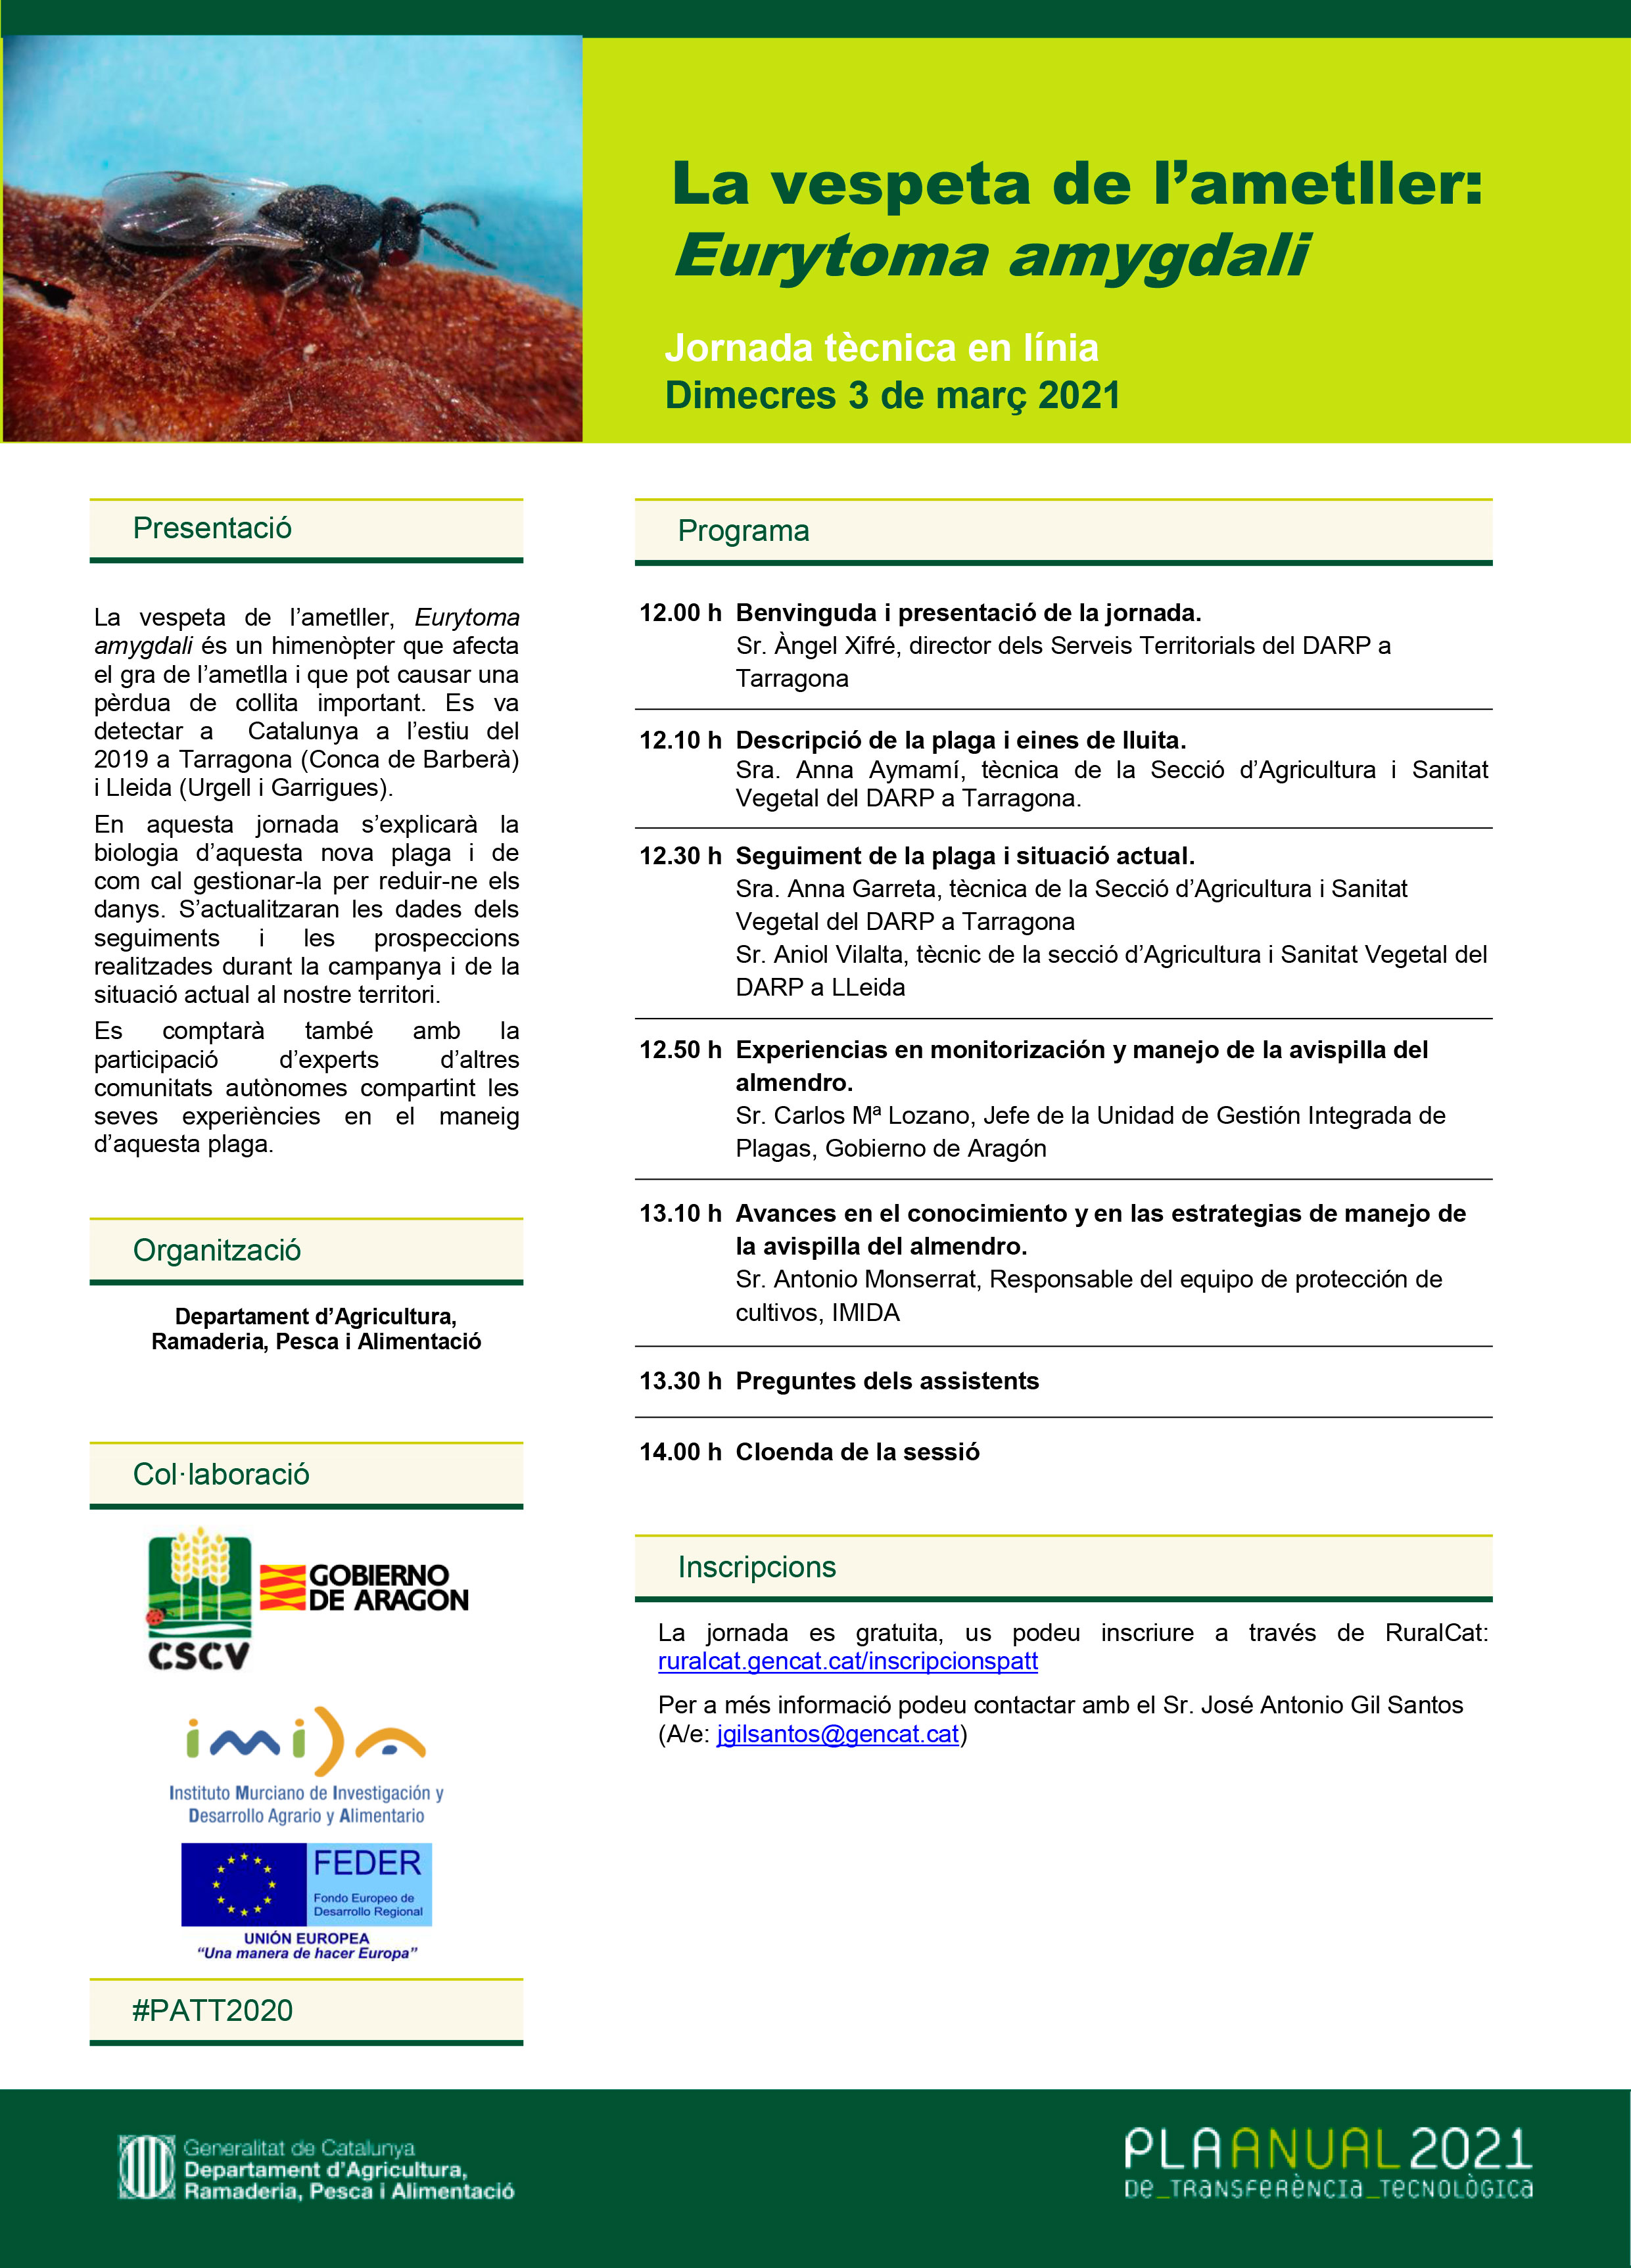 Nueva ponencia sobre los avances en el conocimiento y en las estrategias de manejo de la Avispilla del Almendro